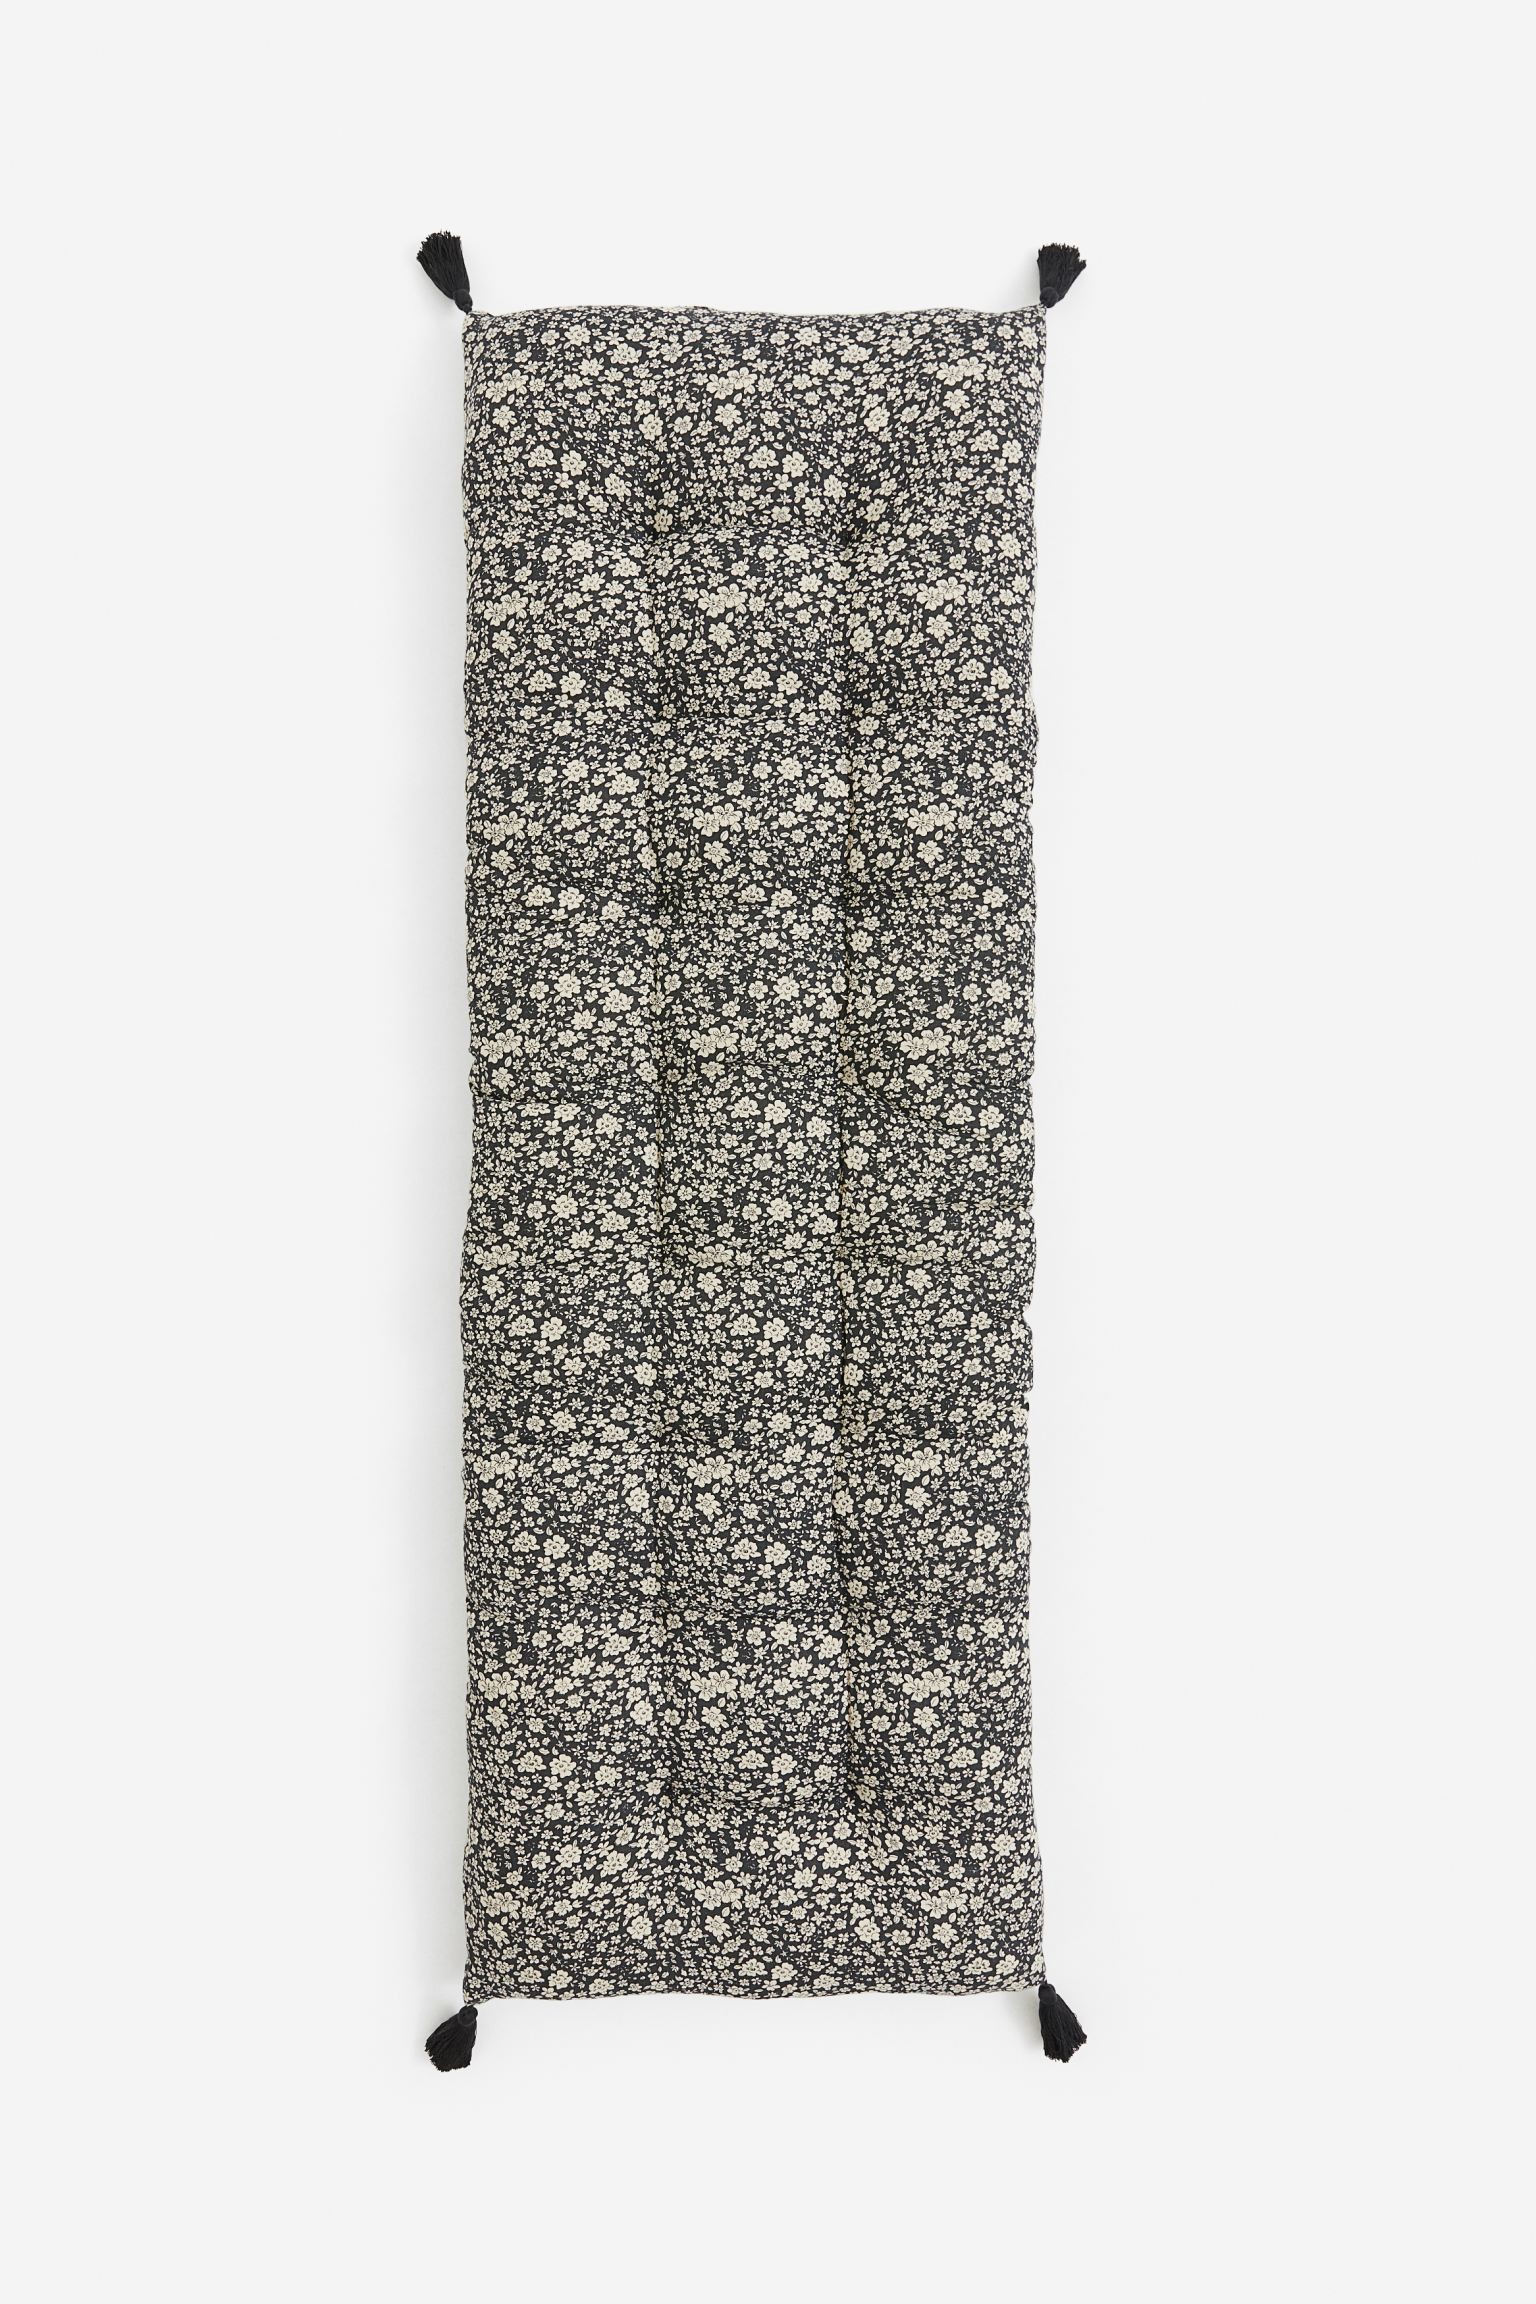 Подушка на стул, Черный/Маленькие цветы, 50x150